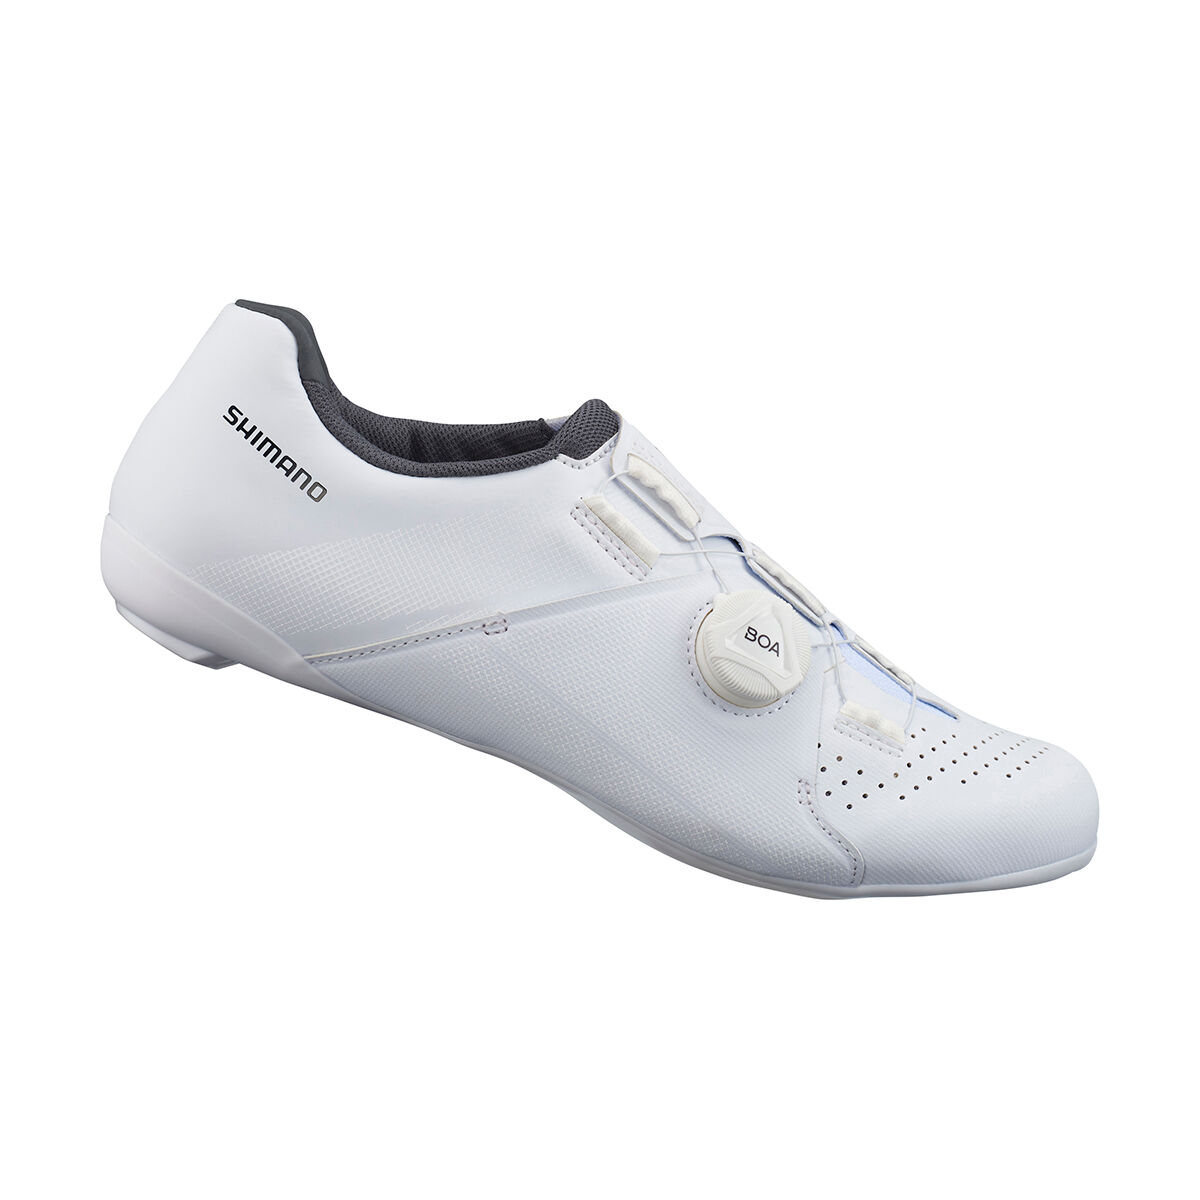 Shimano RC300 - Cycling shoes - Women's